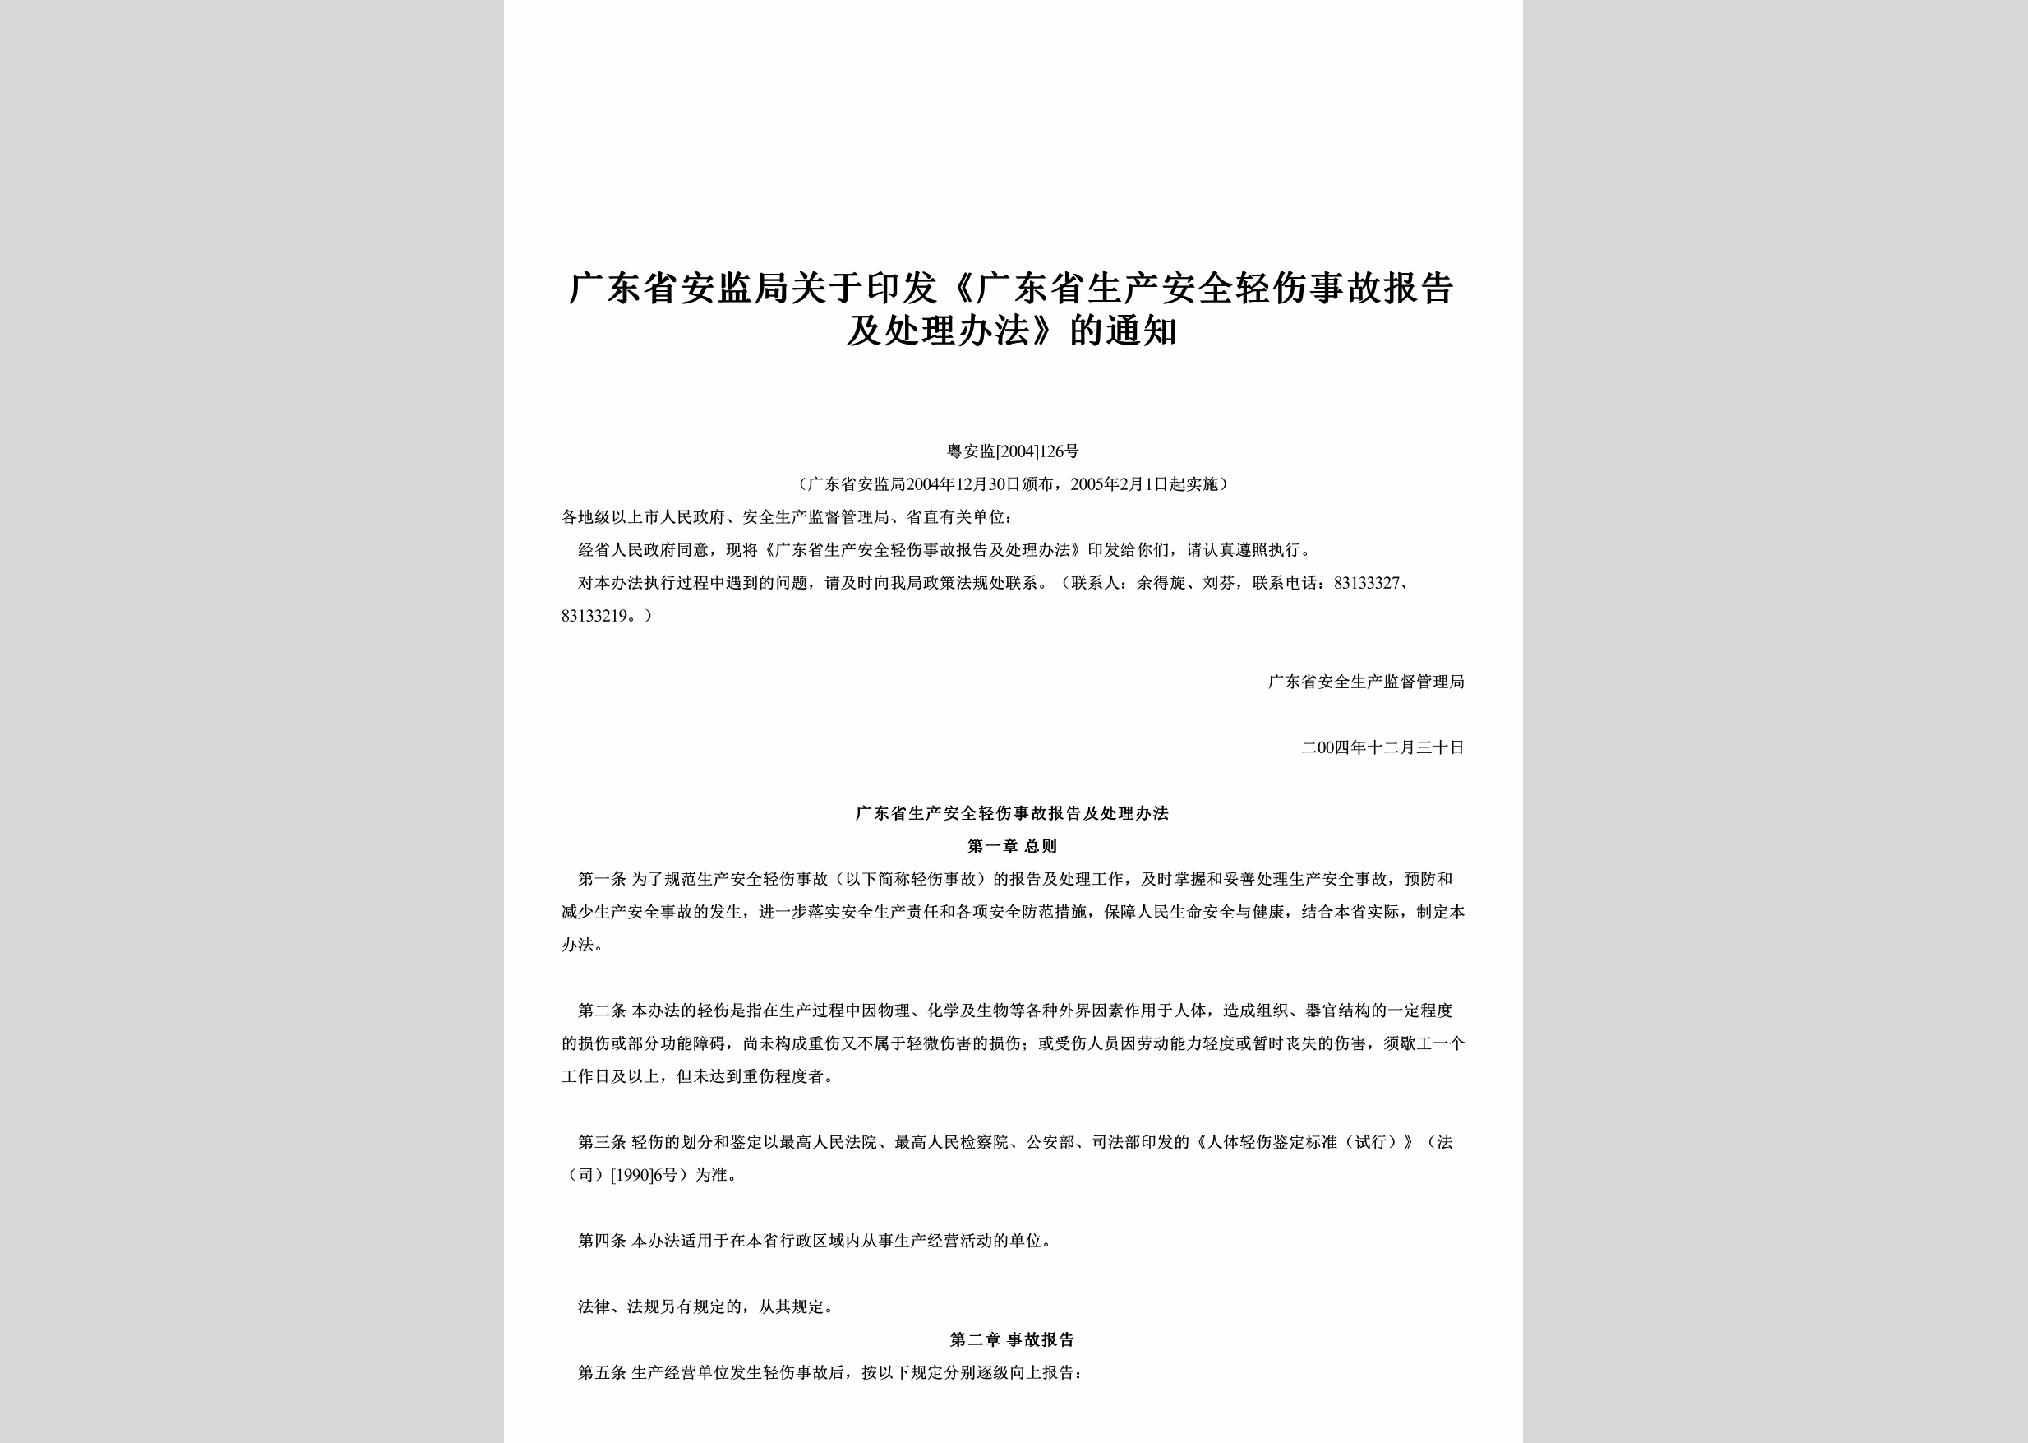 粤安监[2004]126号：关于印发《广东省生产安全轻伤事故报告及处理办法》的通知